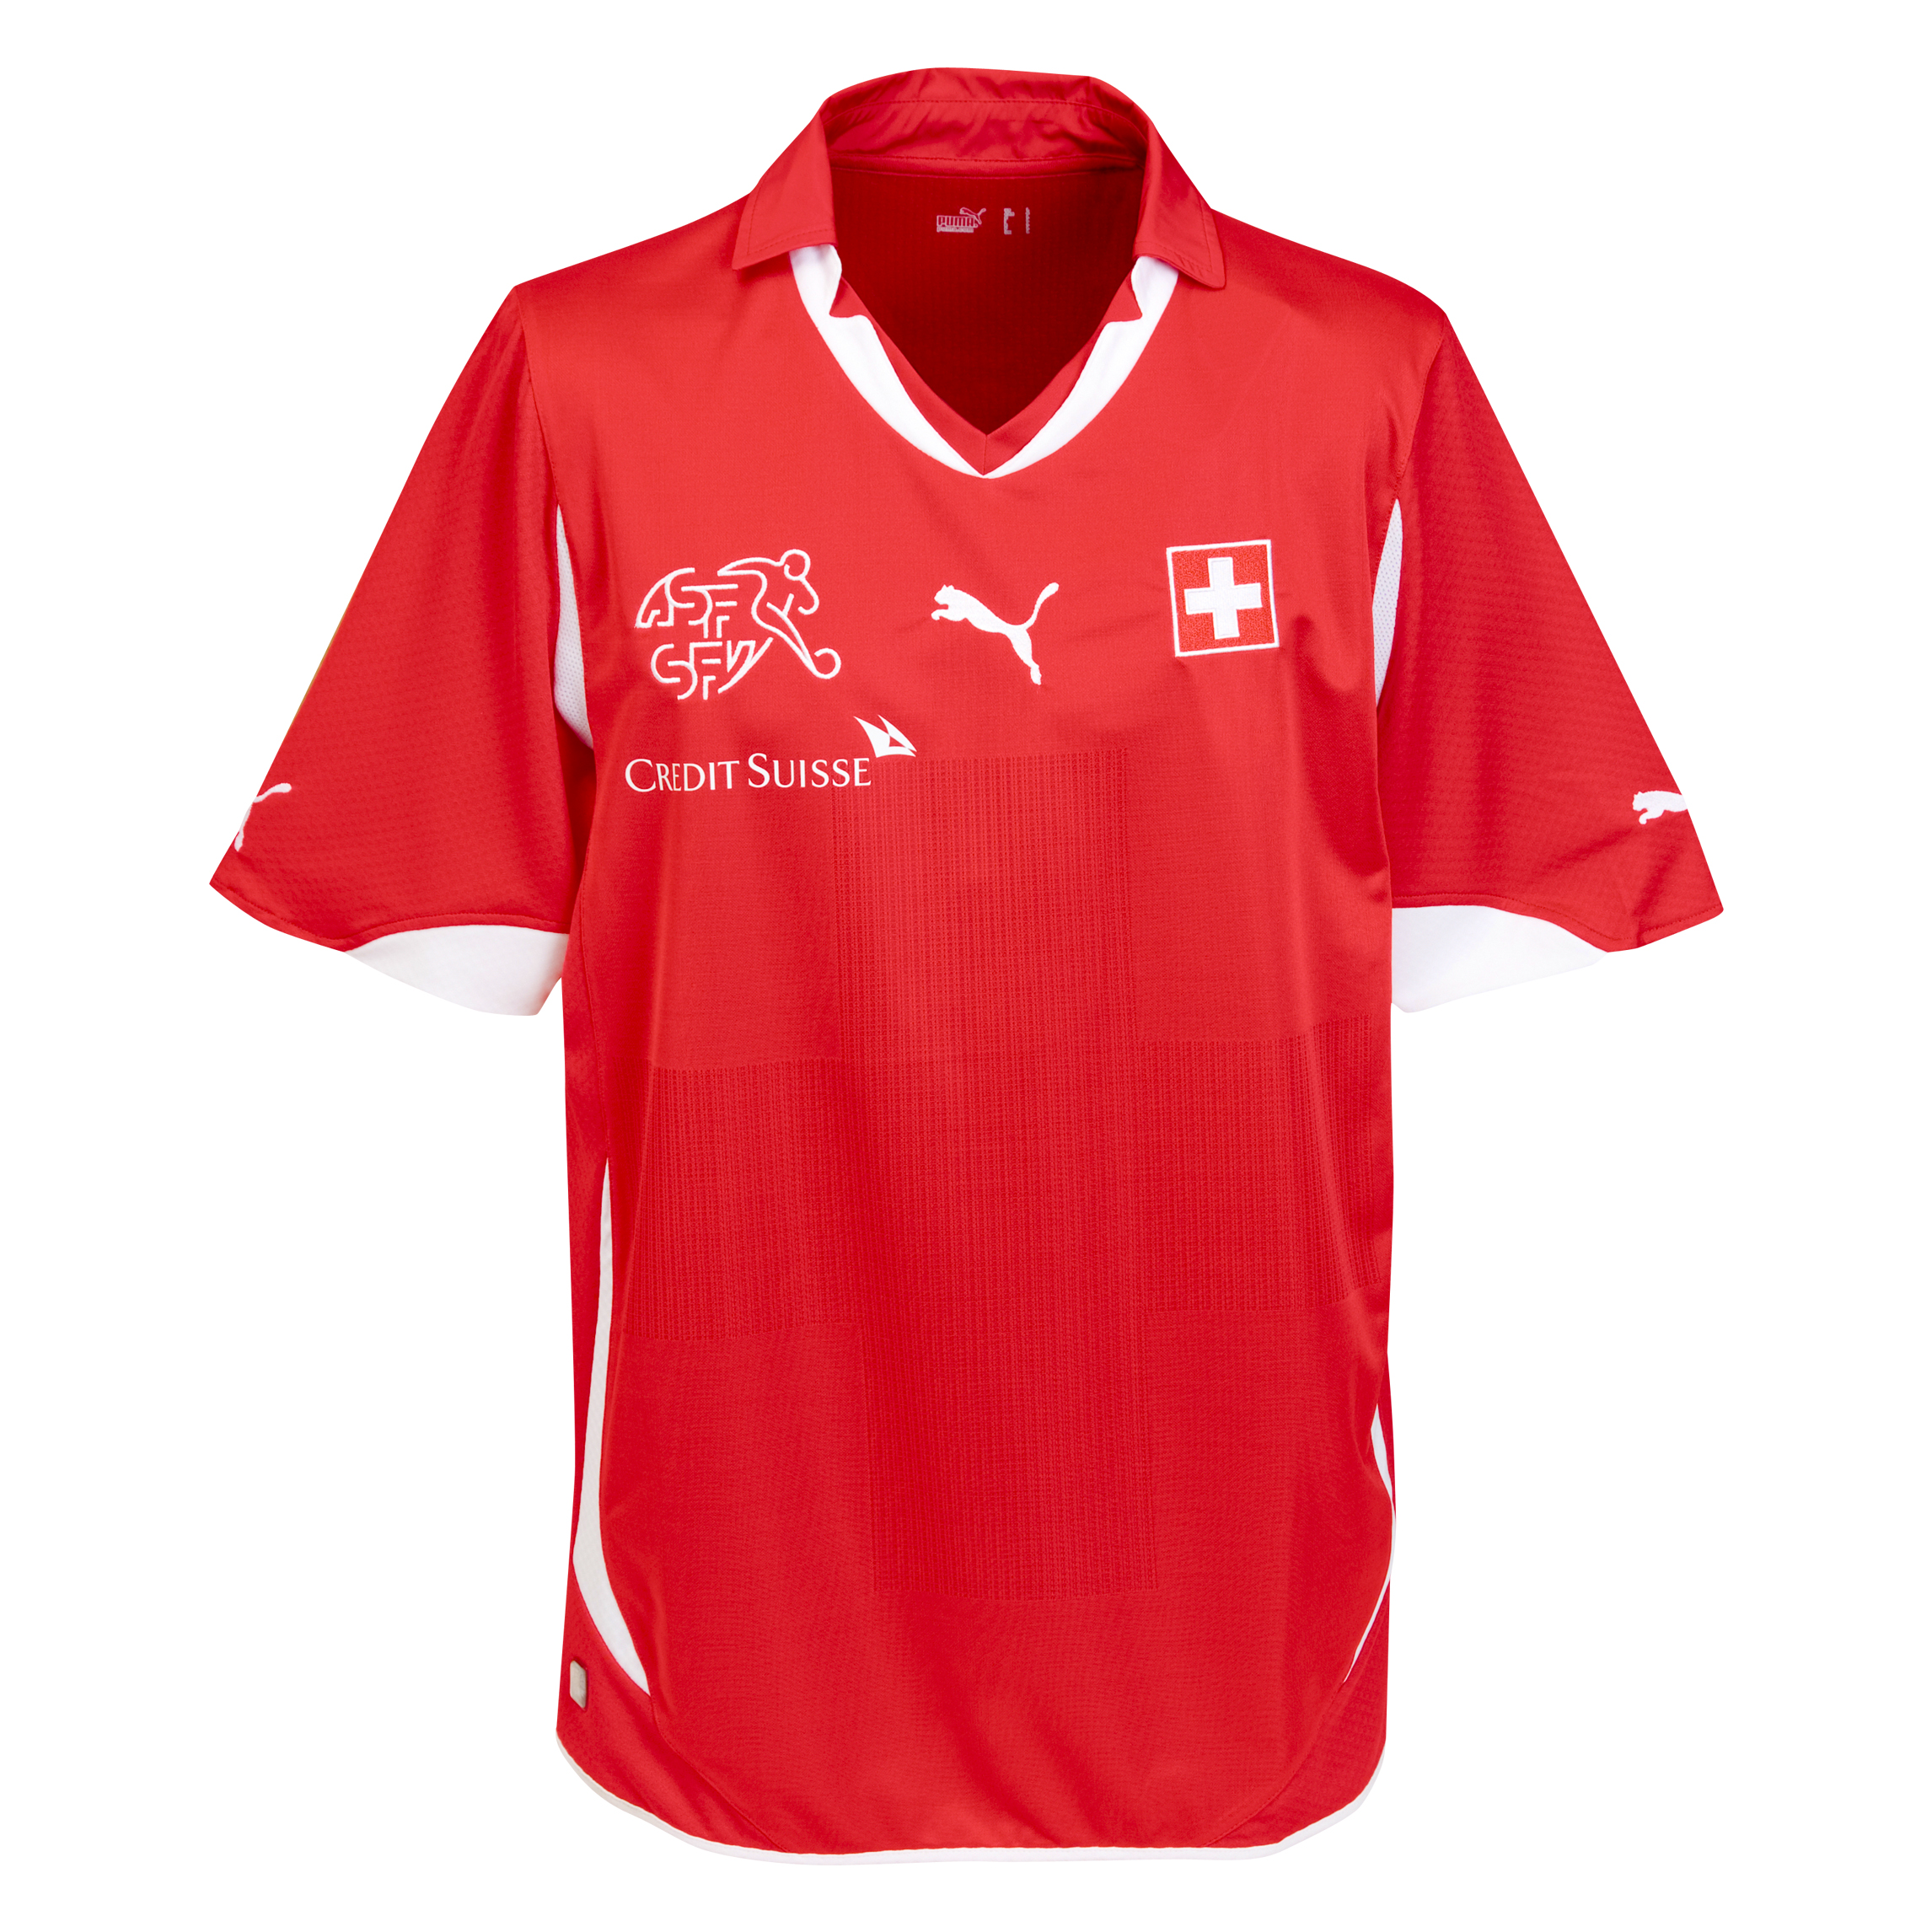 ملابس المنتخبات لكأس العالم2010م Kb-65923